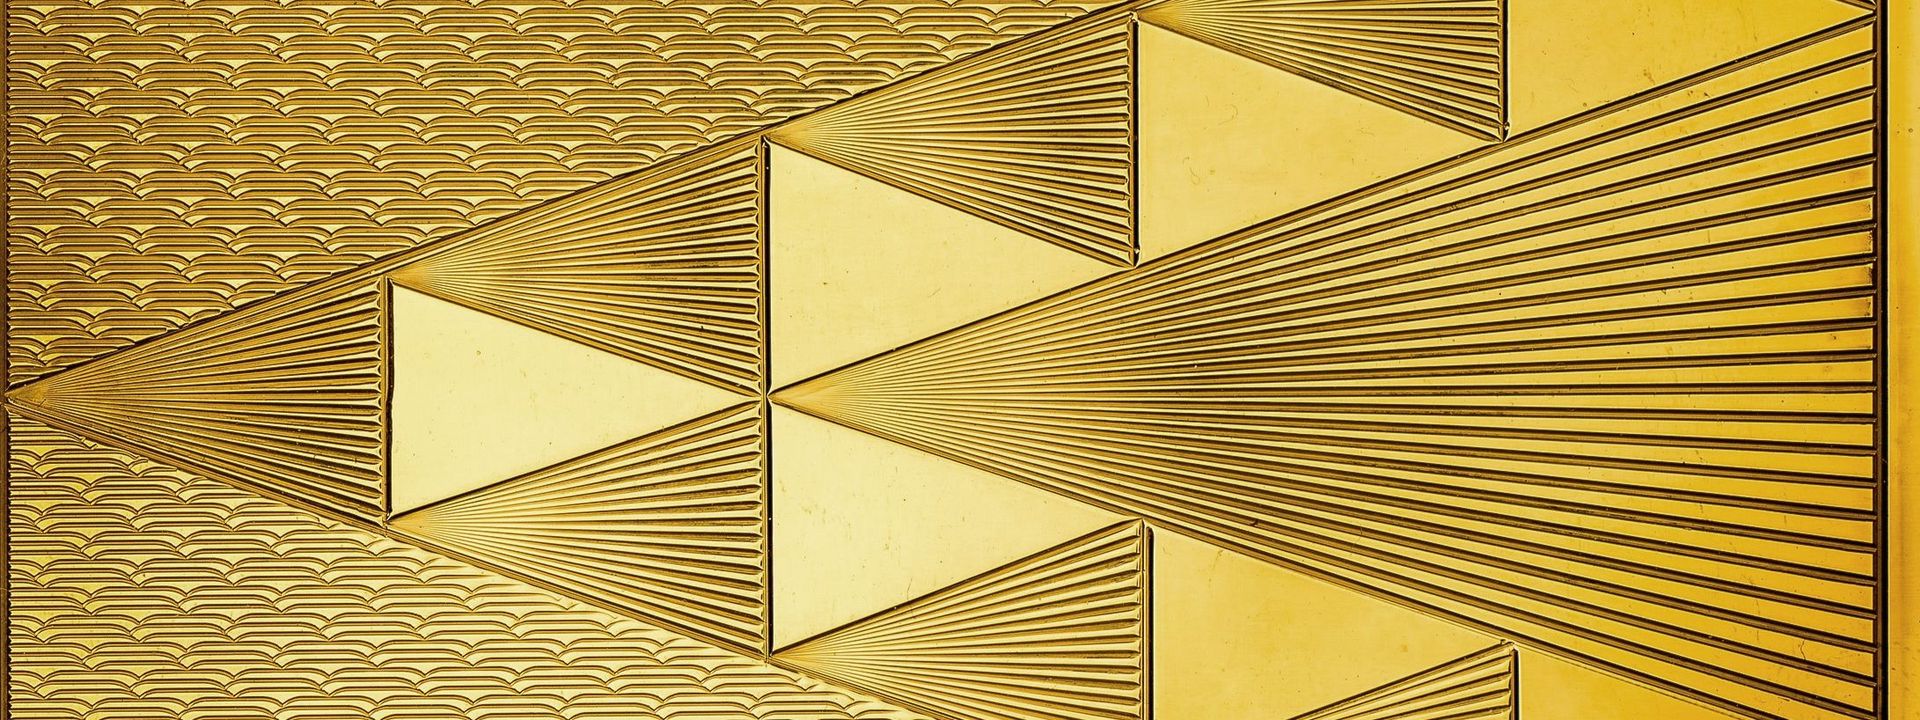 Detailaufnahme eines goldglänzenden Metalls mit geometrischen Gravur.